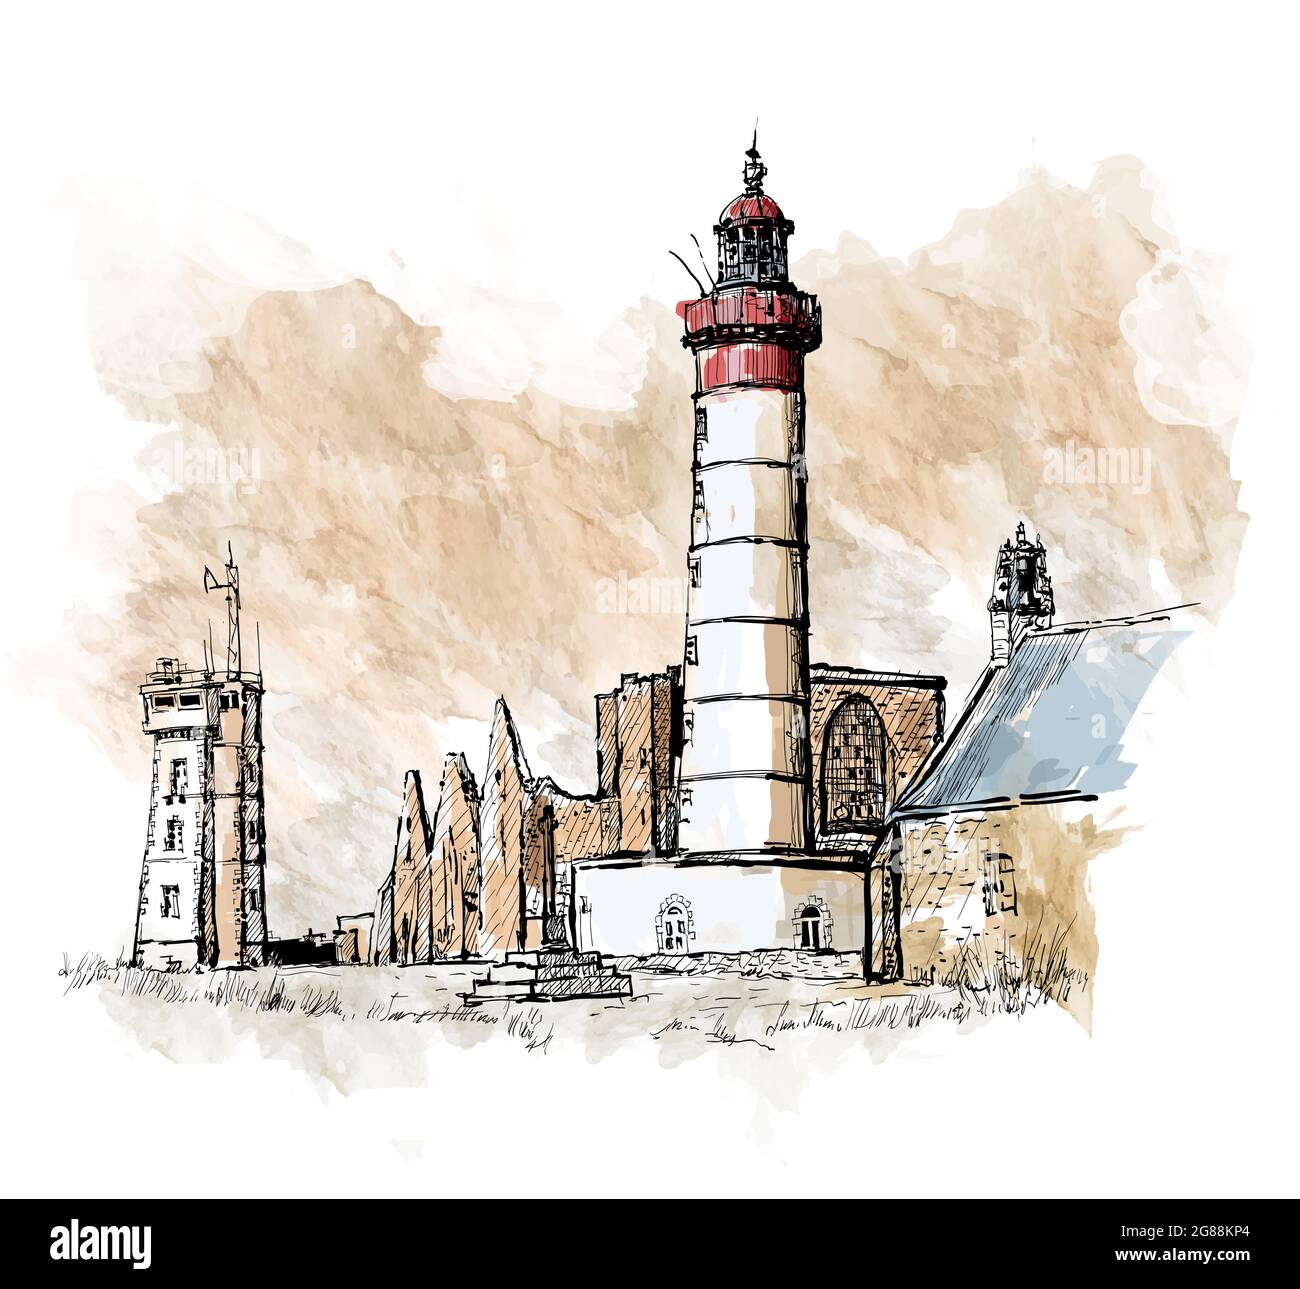 Dessin et aquarelle du phare de Saint Mathieu et des ruines de l'ancienne abbaye en Bretagne, France - illustration vectorielle Illustration de Vecteur